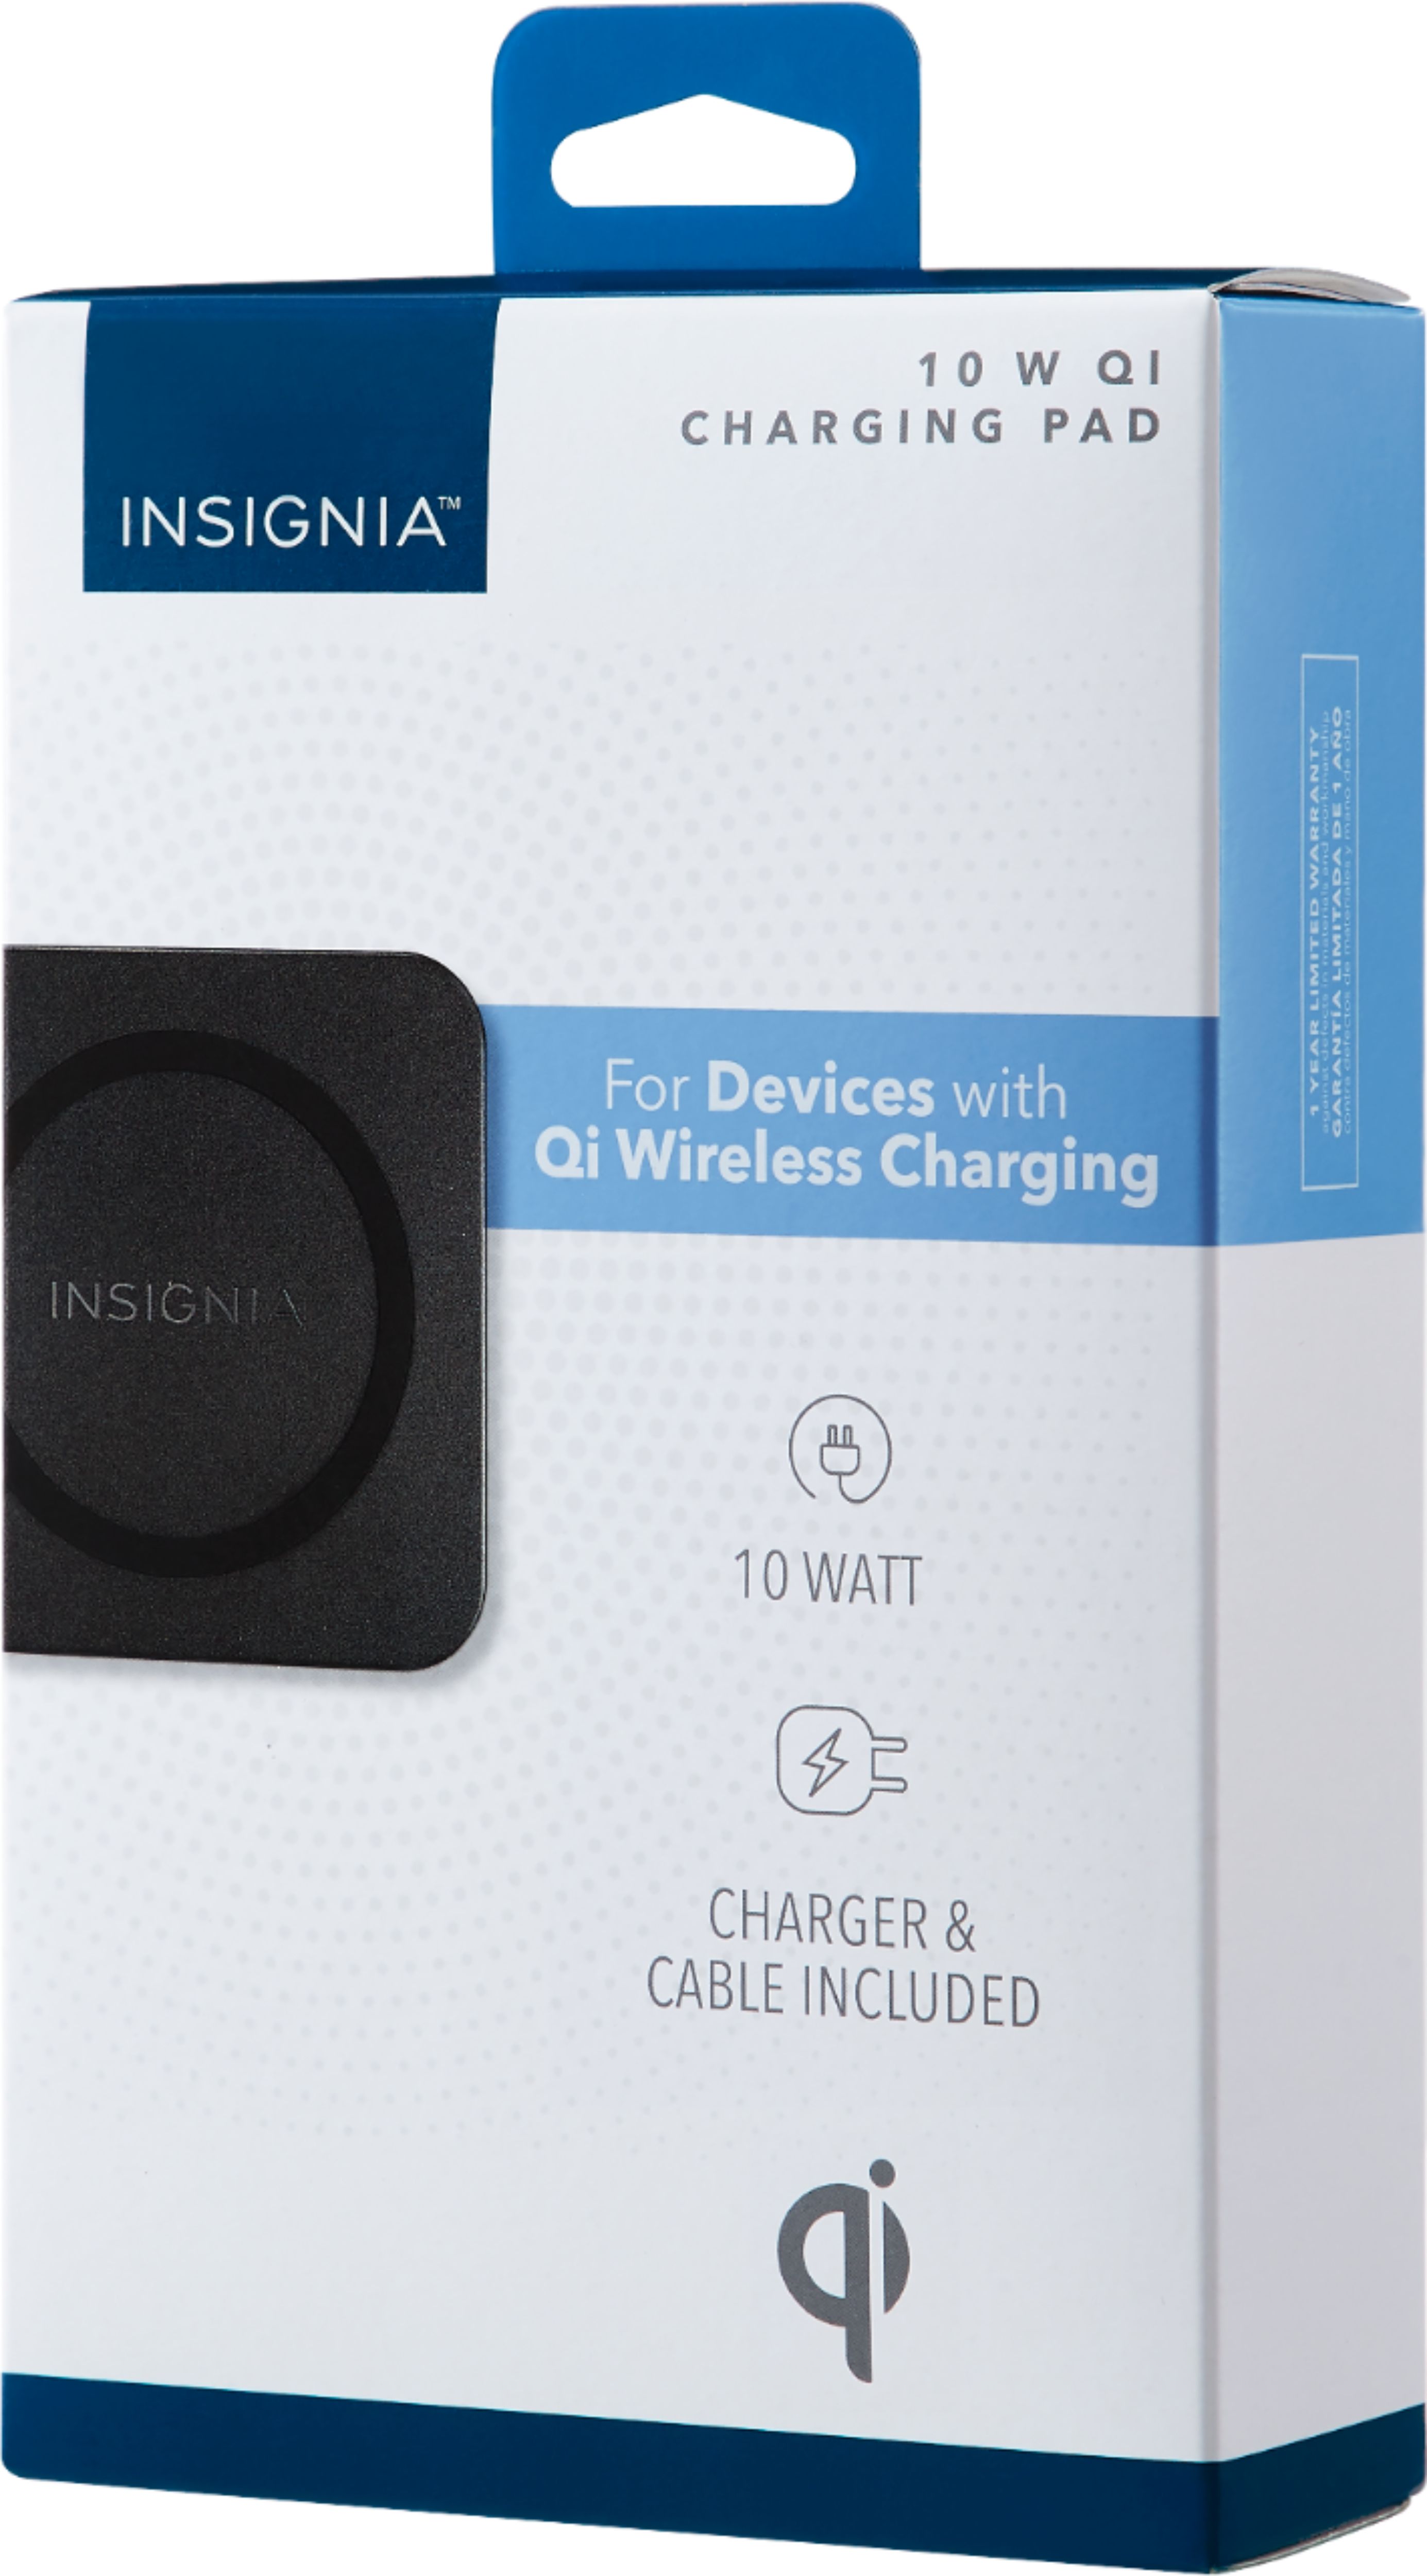 スマホアクセサリー iPhone用ケース Best Buy: Insignia™ 10 W Qi Certified Wireless Charging Pad for 